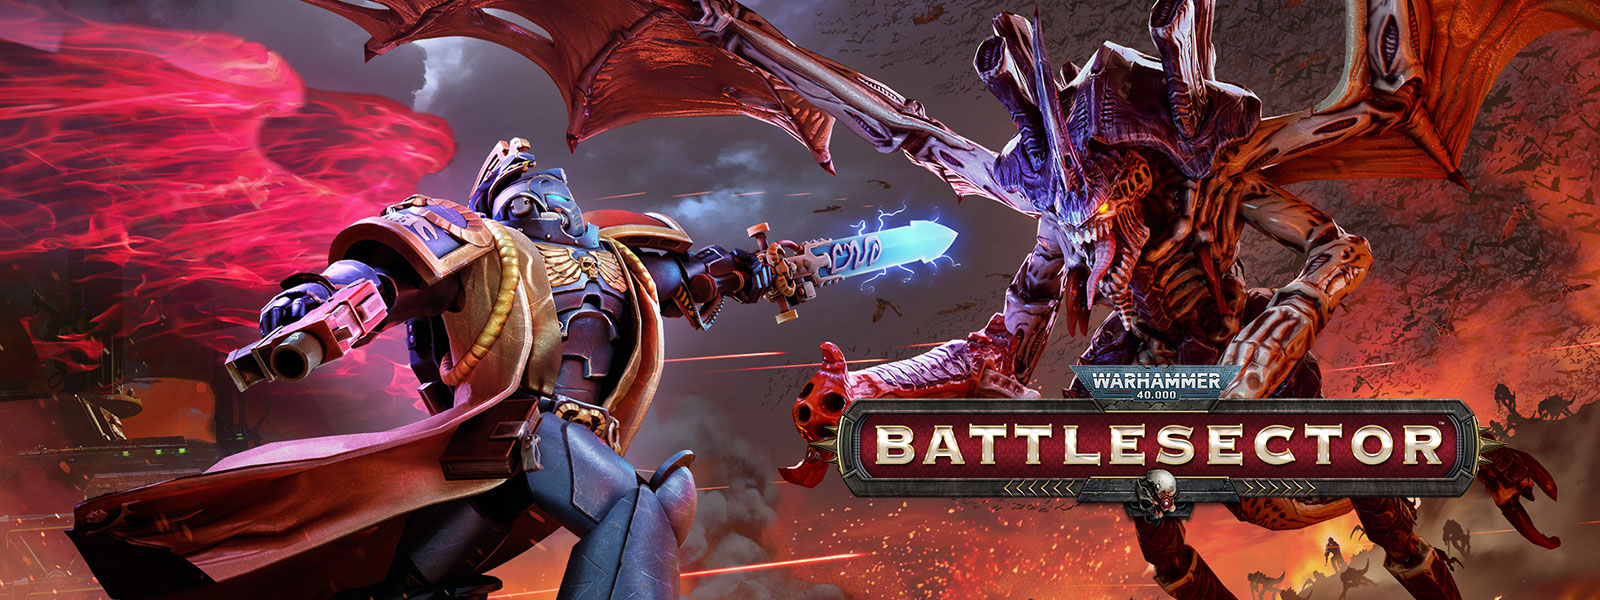 Warhammer 40,000: Battlesector, Knihovník bojuje proti Hive Tyrantovi.